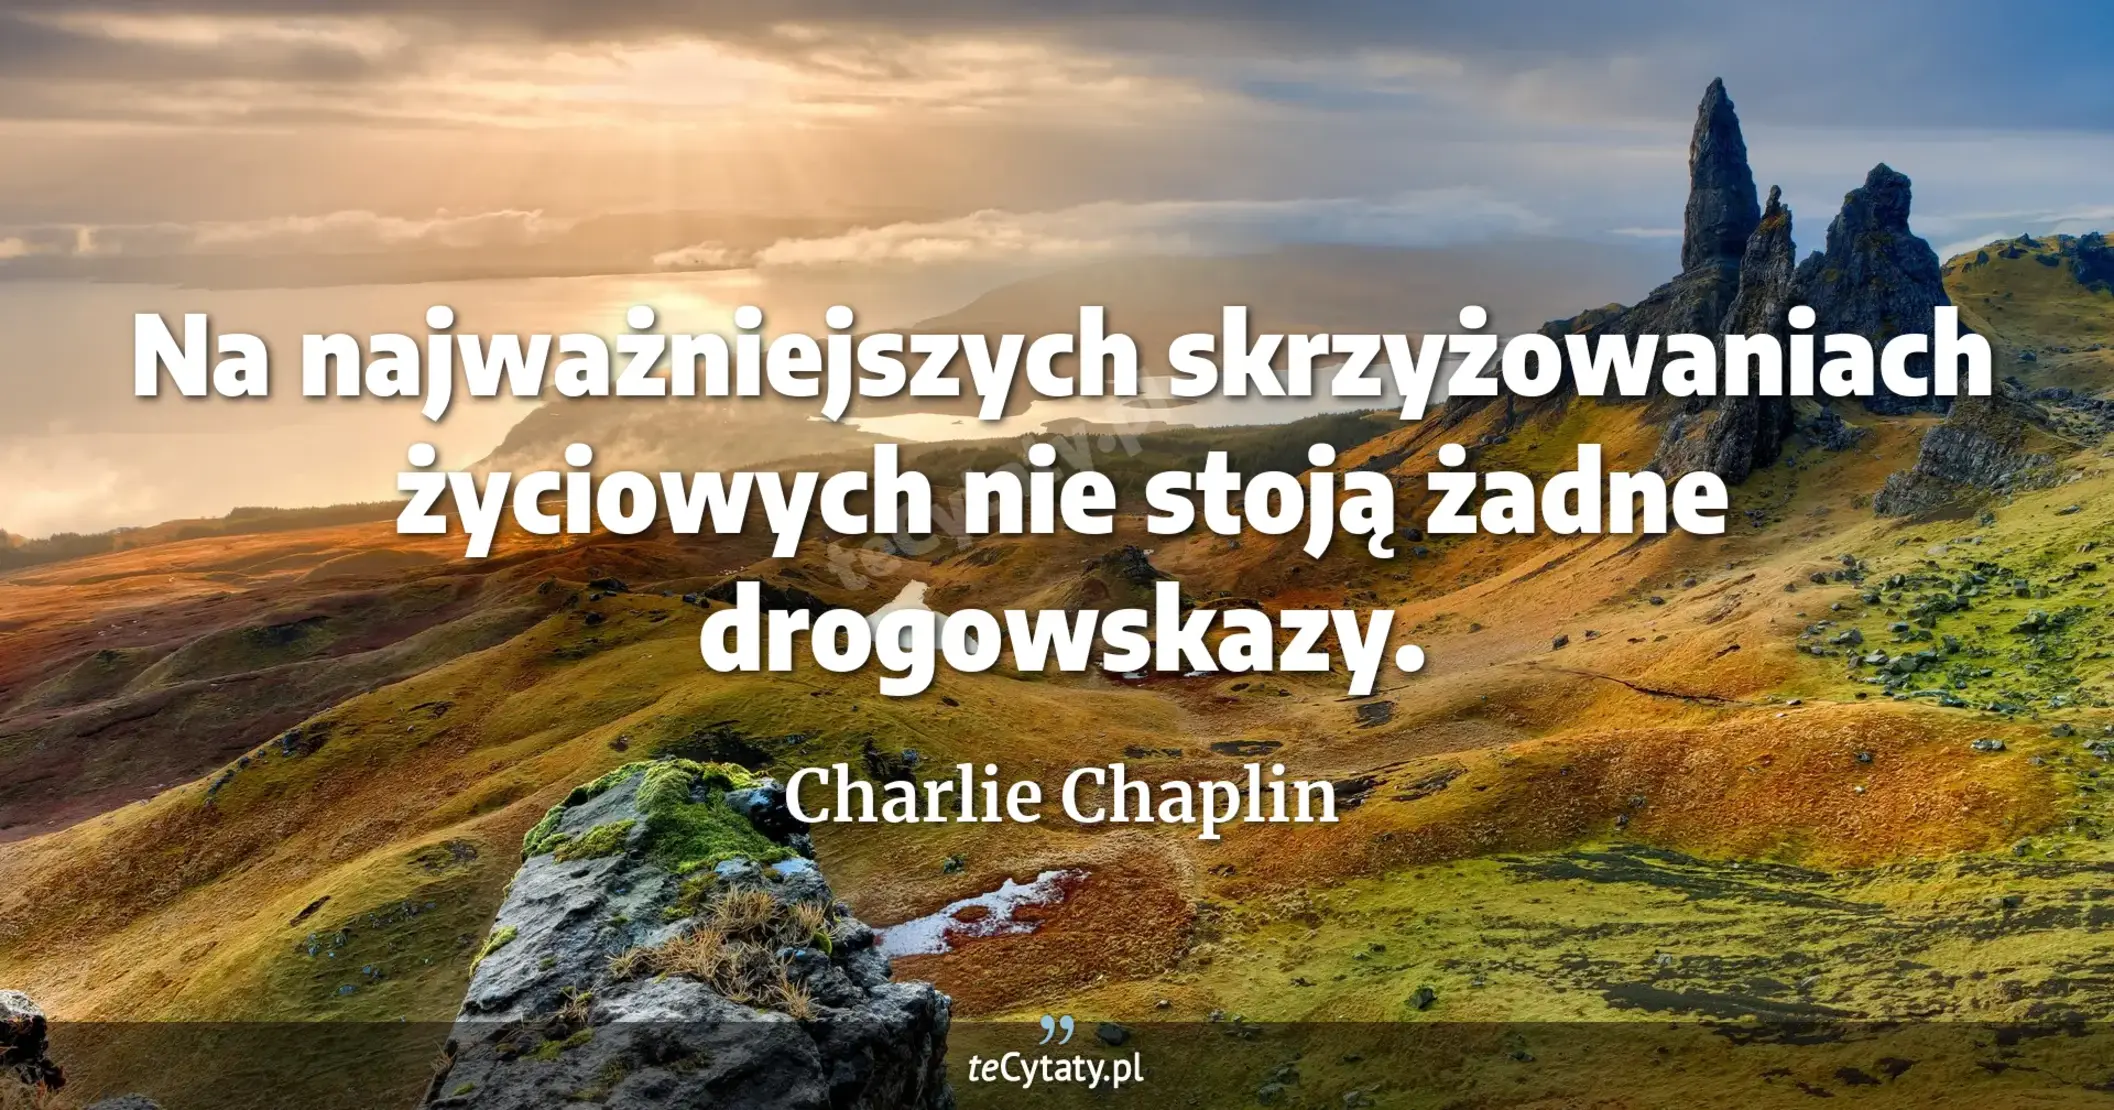 Na najważniejszych skrzyżowaniach życiowych nie stoją żadne drogowskazy. - Charlie Chaplin